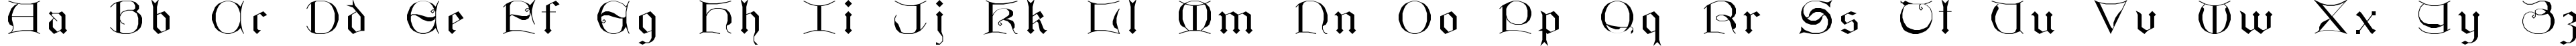 Пример написания английского алфавита шрифтом GothicI